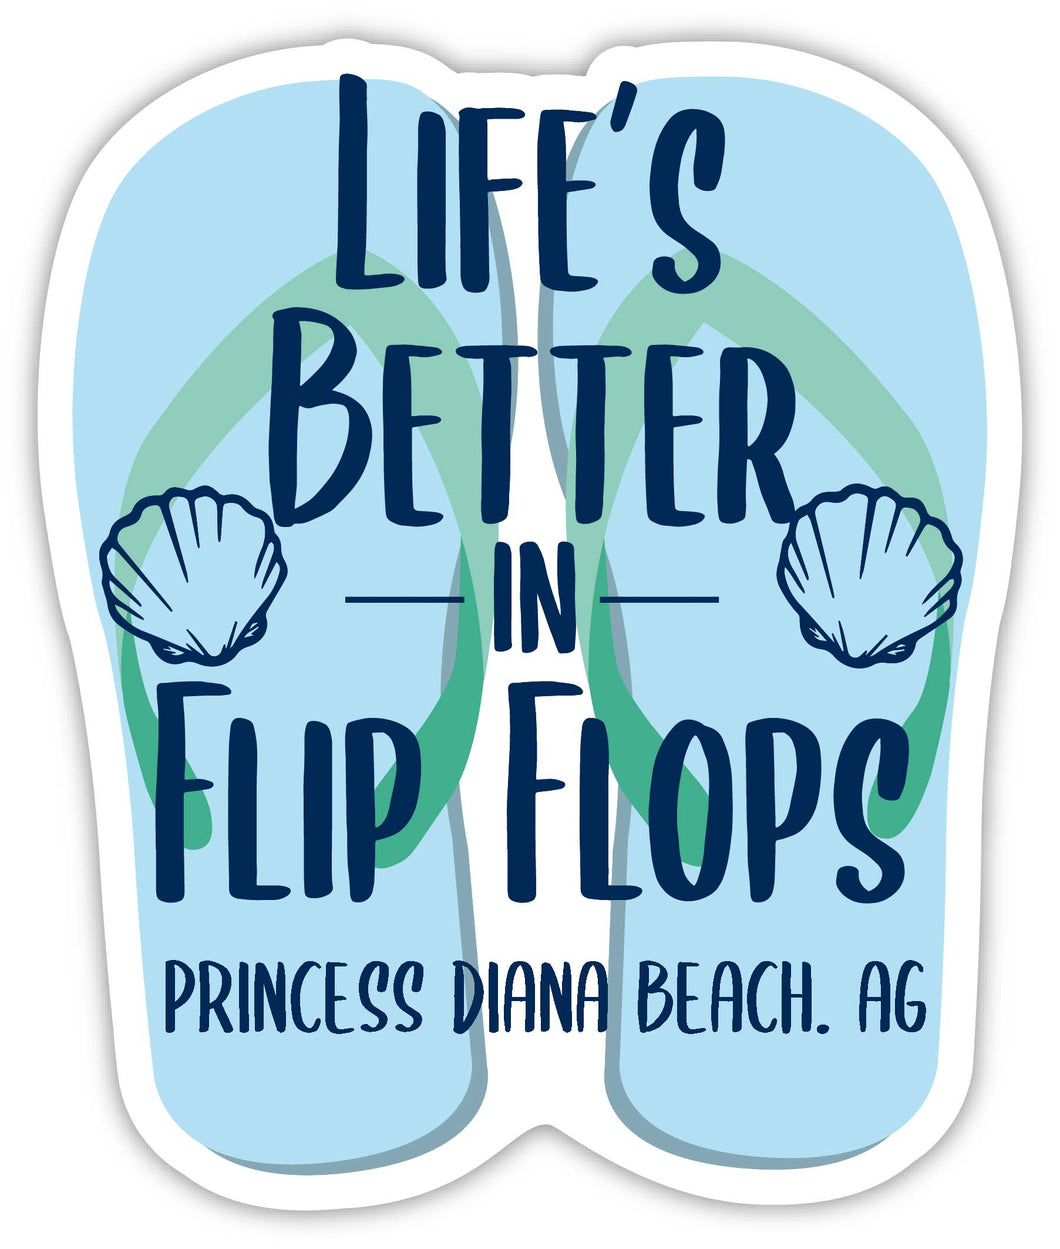 Princess Diana Beach Antigua And Barbuda Souvenir 4 Inch Vinyl Decal Sticker Flip Flop Design